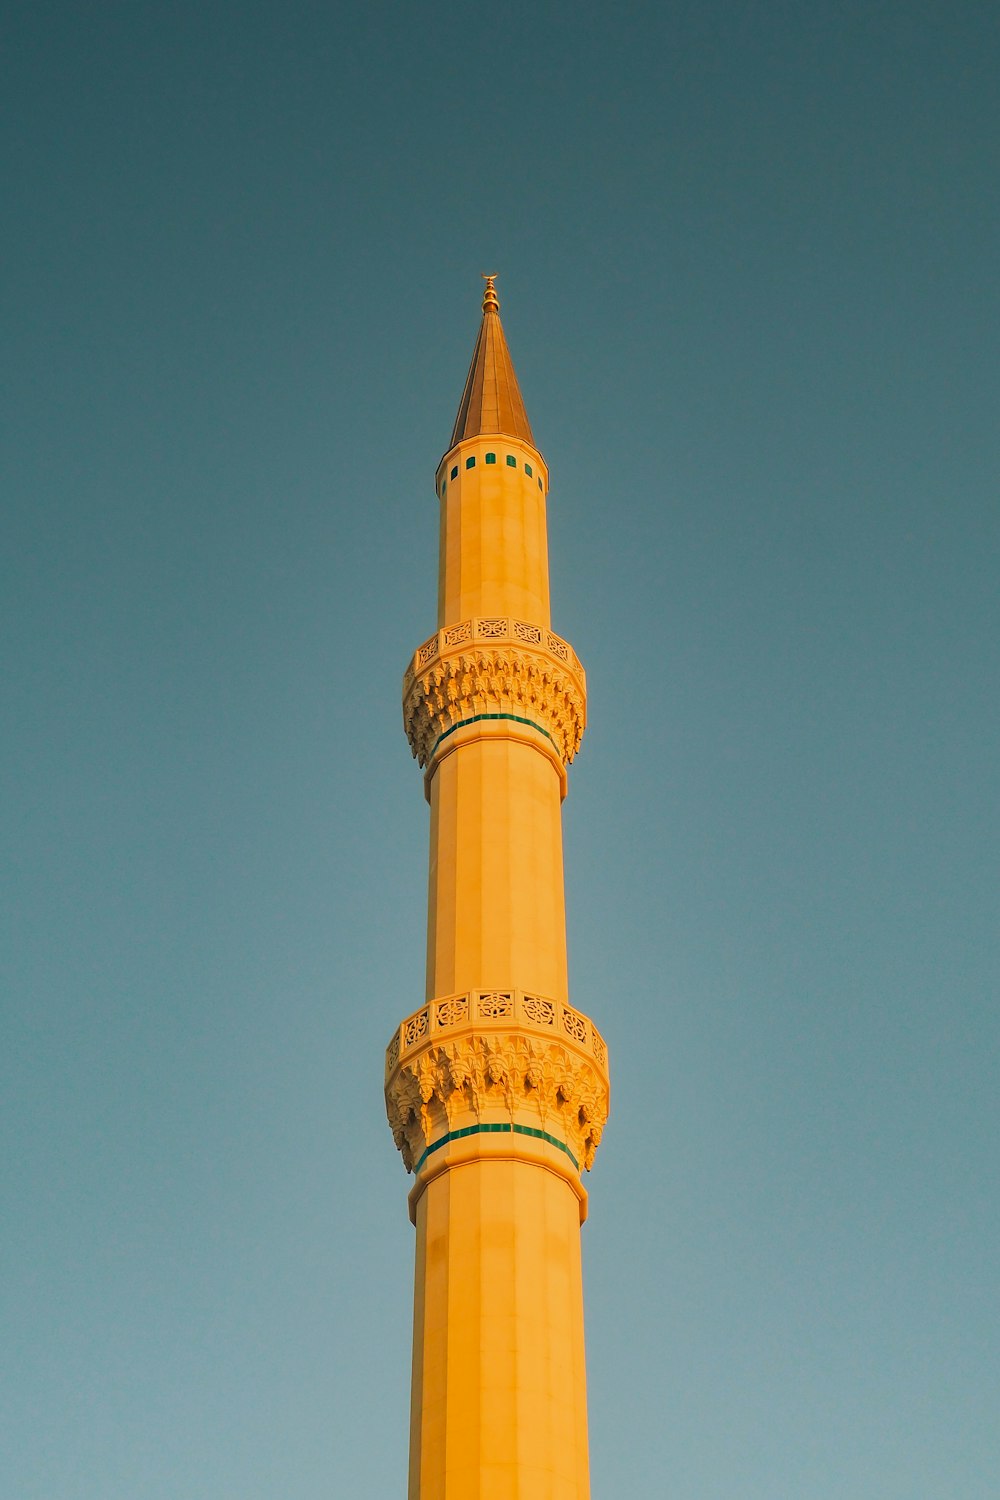 Ein hoher gelber Turm mit einem Himmelshintergrund